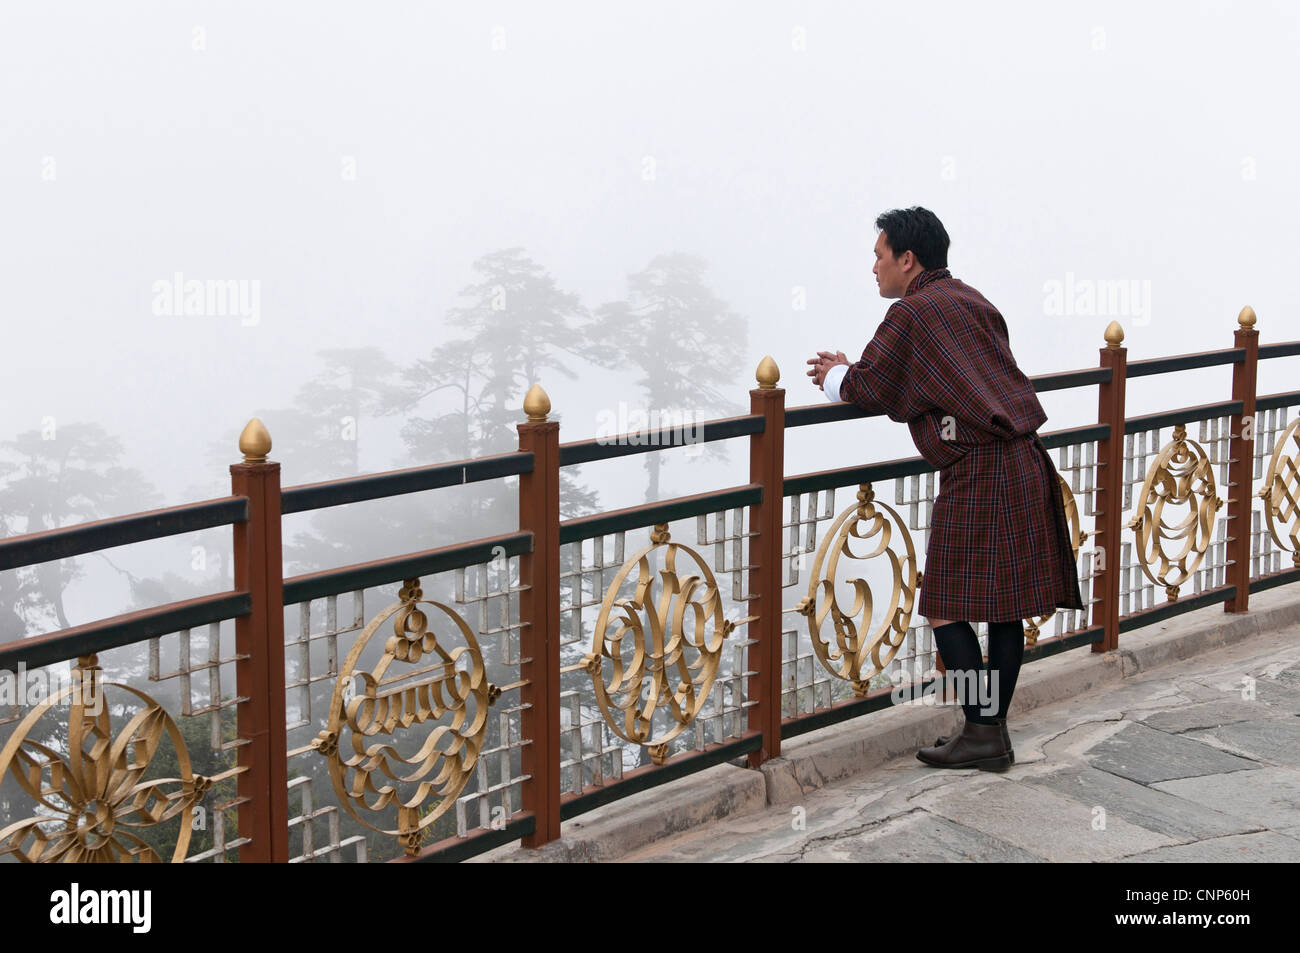 Asien, Bhutan, Dochu La Mann tragen Trachten Gho in Nebel gehüllten Bäume suchen Stockfoto